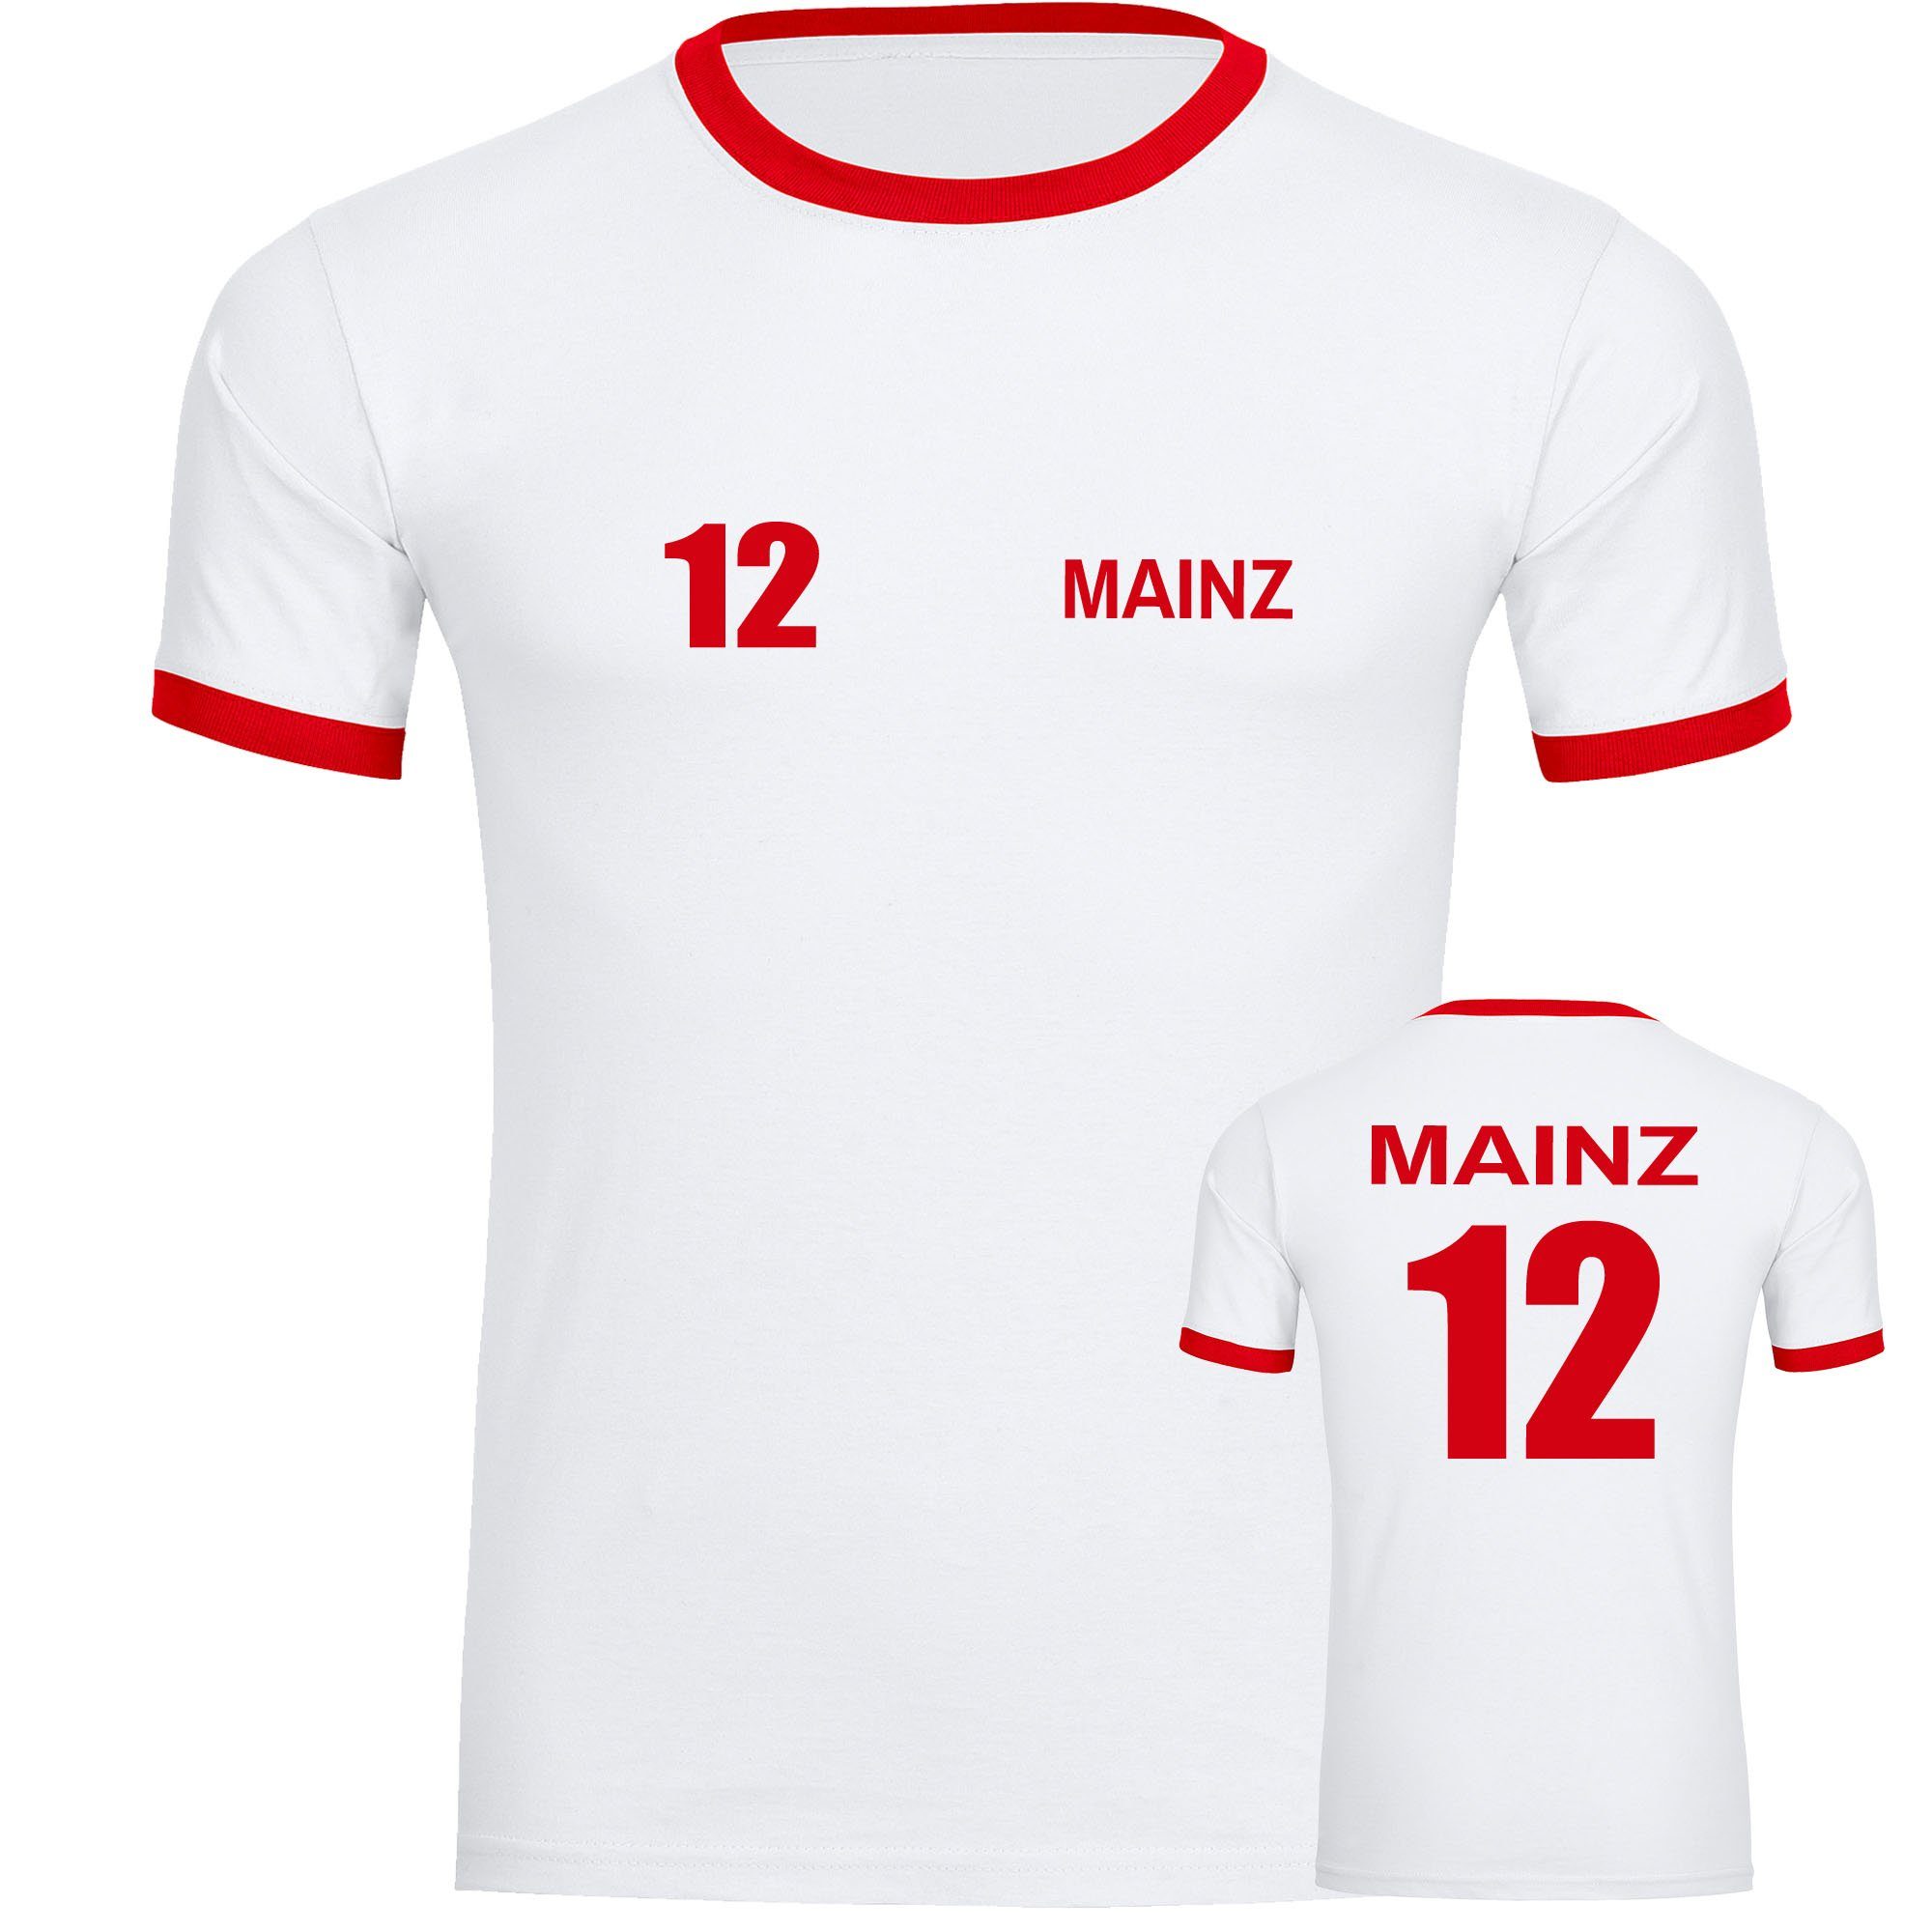 multifanshop T-Shirt Kontrast Mainz - Trikot 12 - Männer